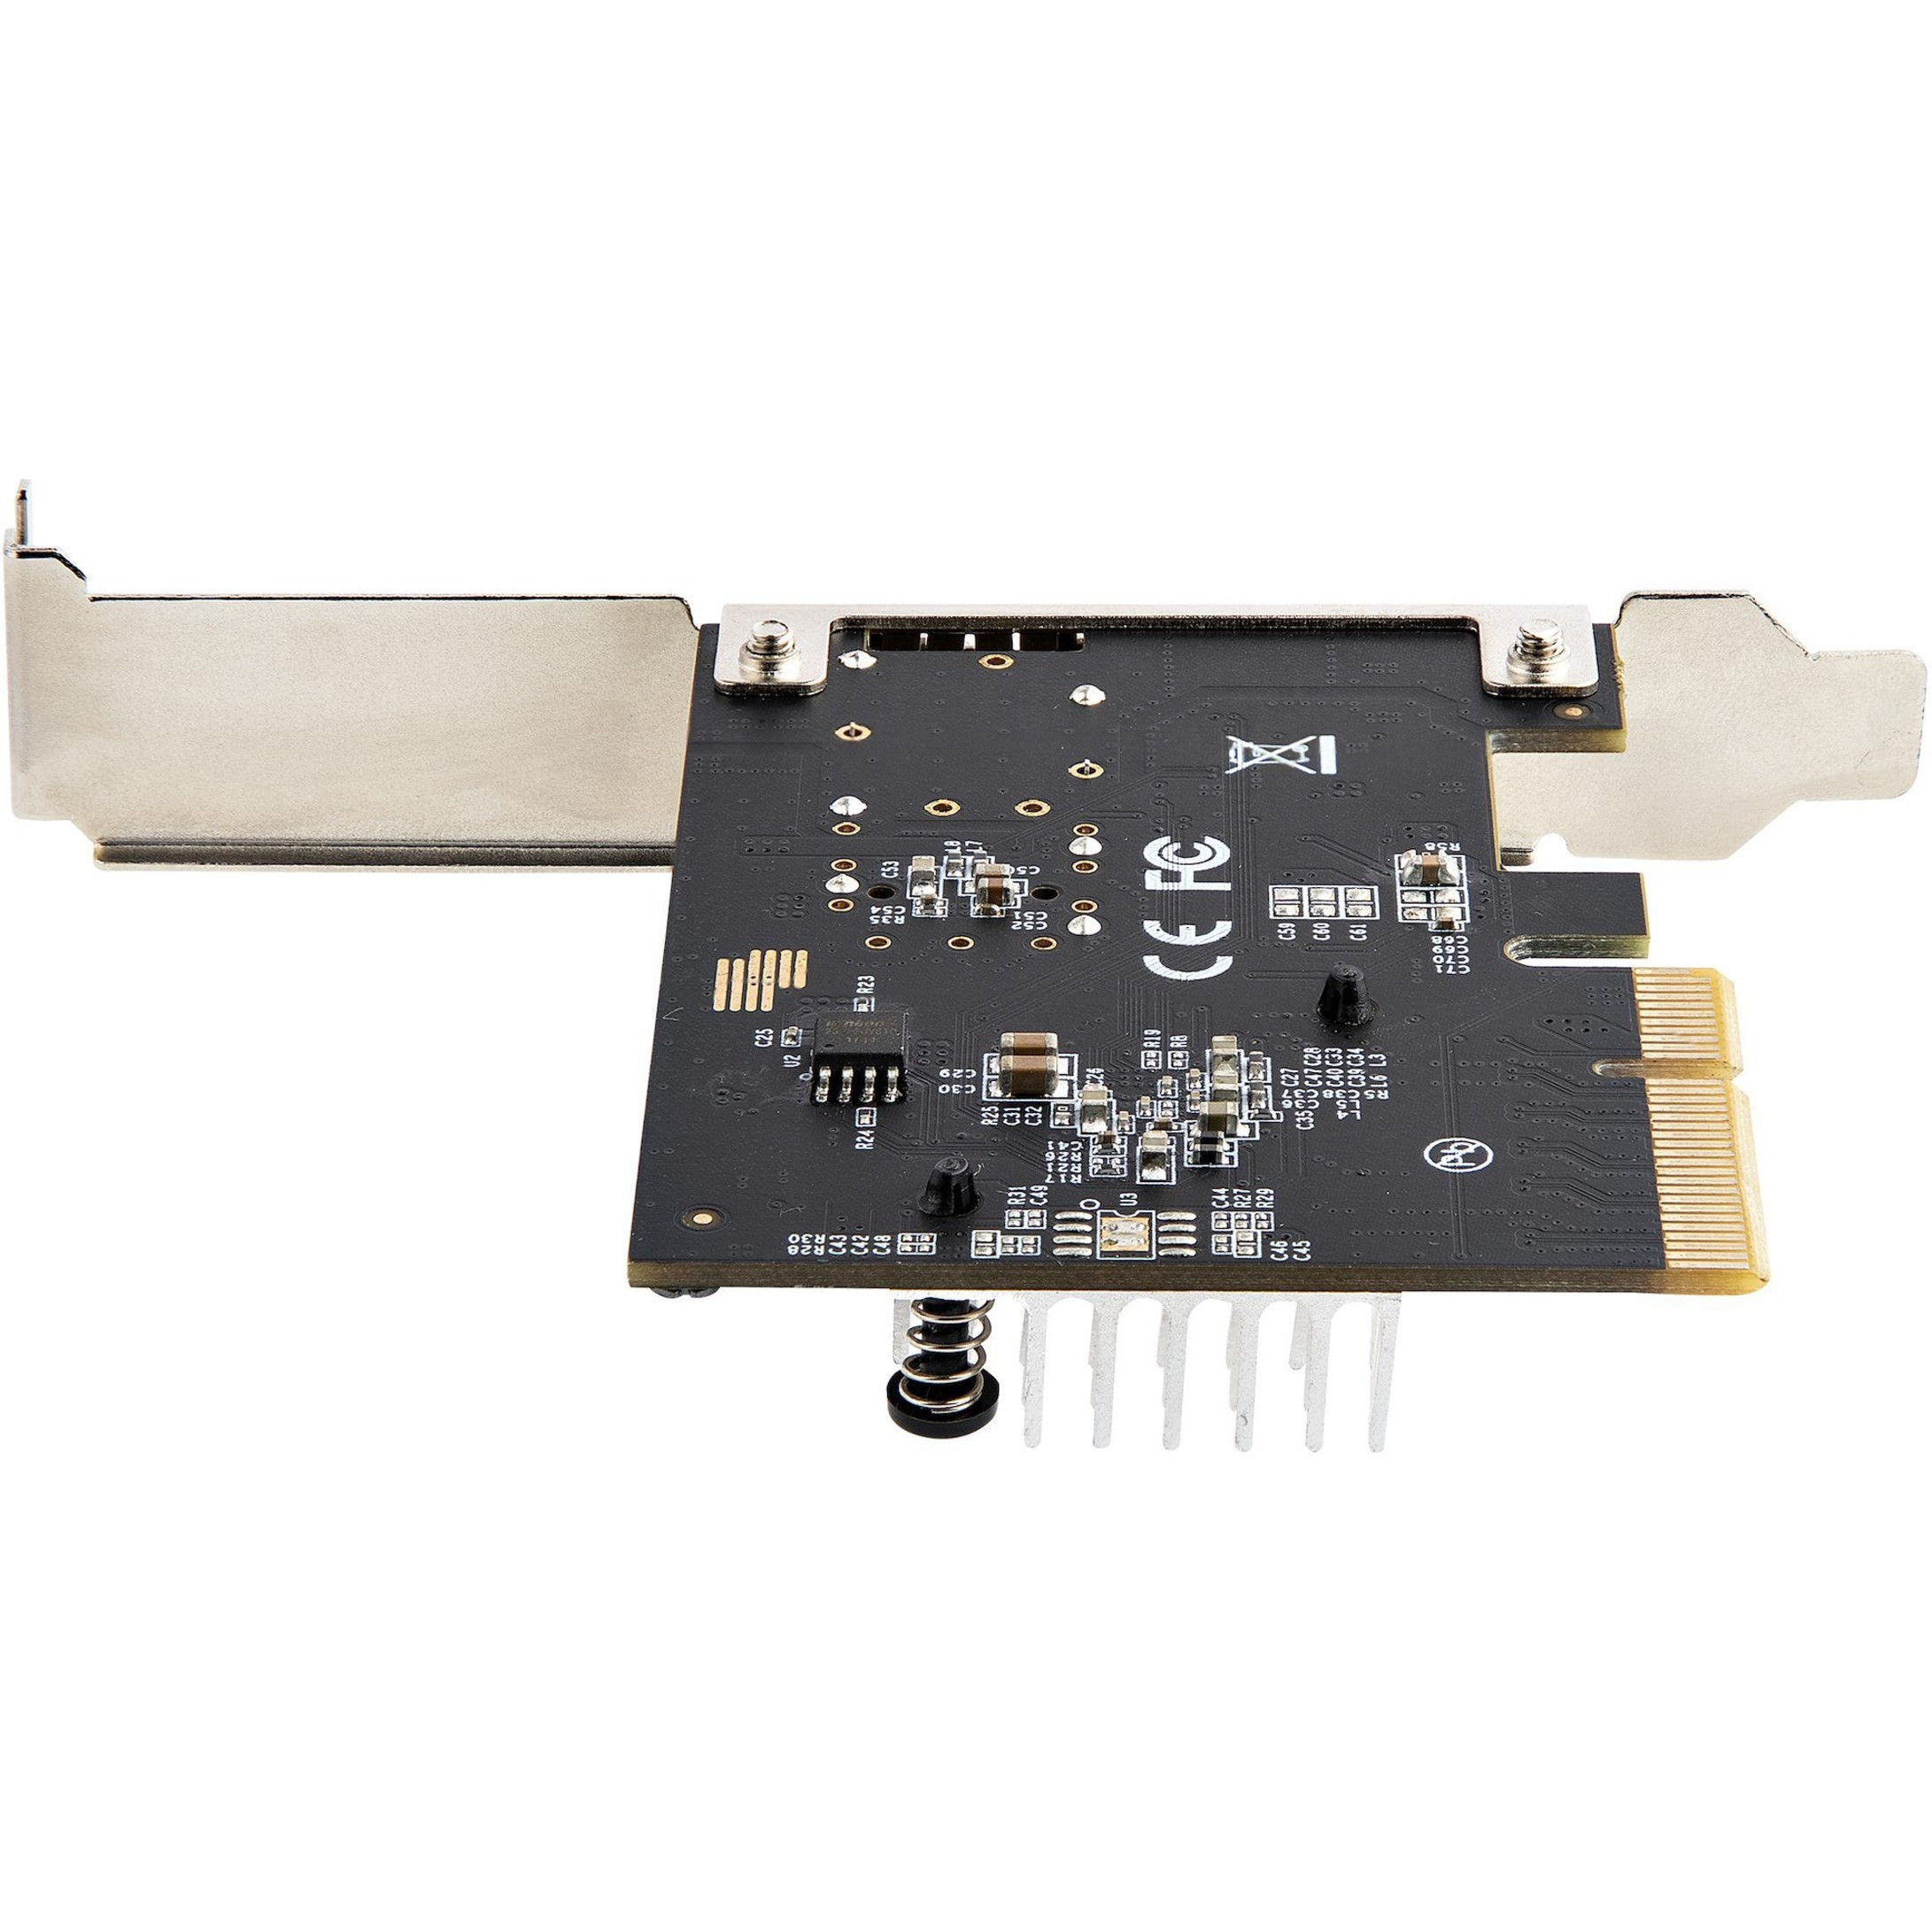 Startech .com 10G PCIe SFP+ Card, Single SFP+ Port Network Adapter